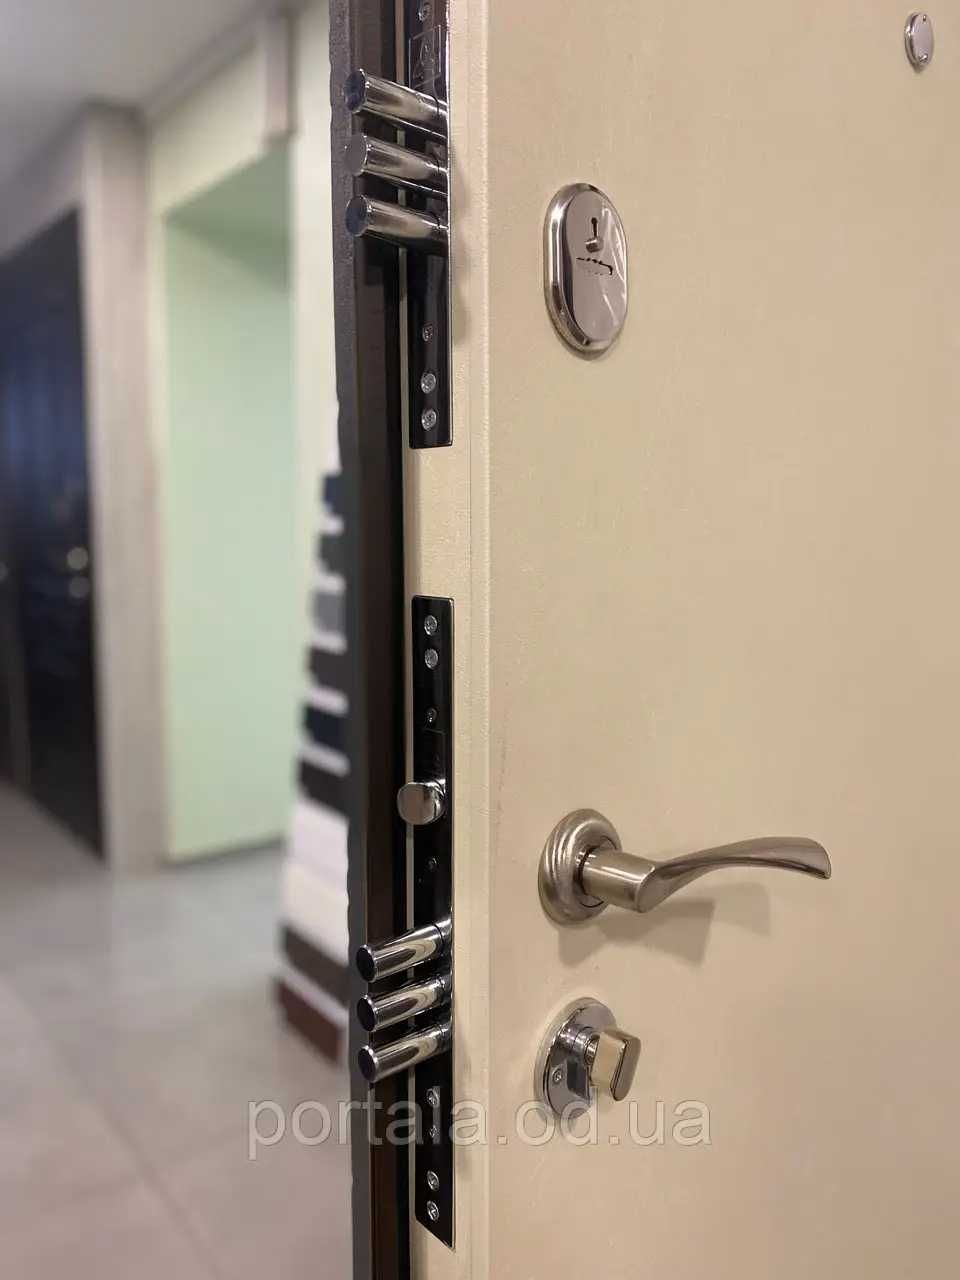 Входная дверь для квартиры "Портала" (серия Модерн) ― модель Монблан